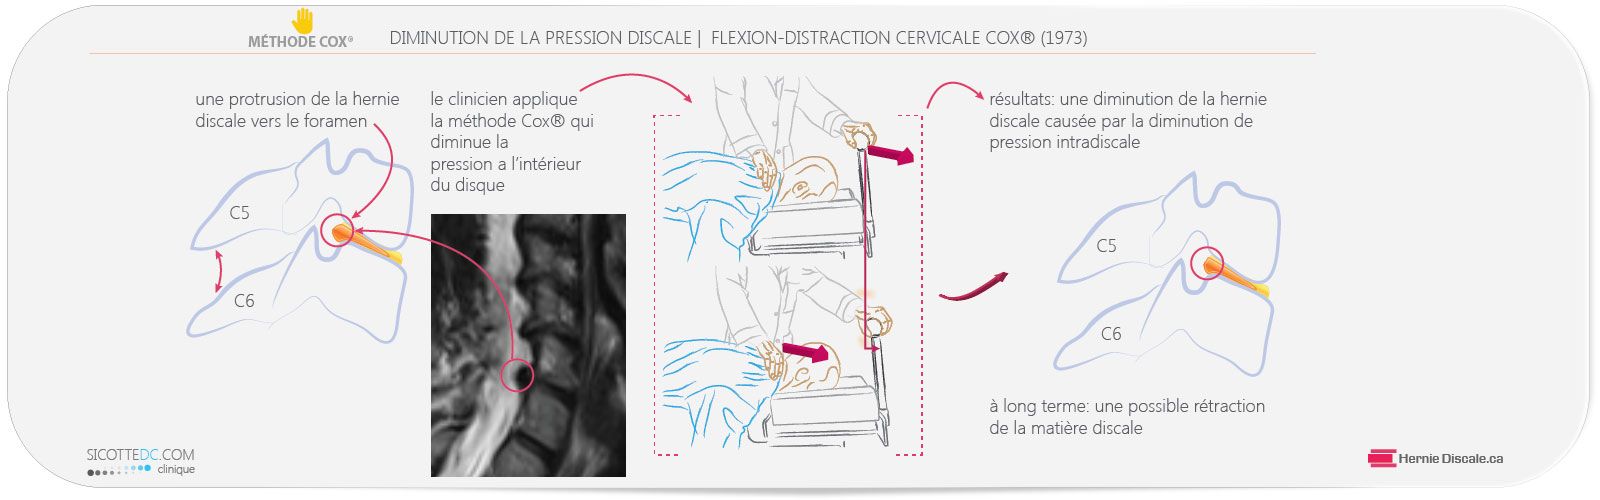 La diminution de la pression intradiscale de la hernie discale cervicale C5-C6 avec l'application de la méthode Cox®